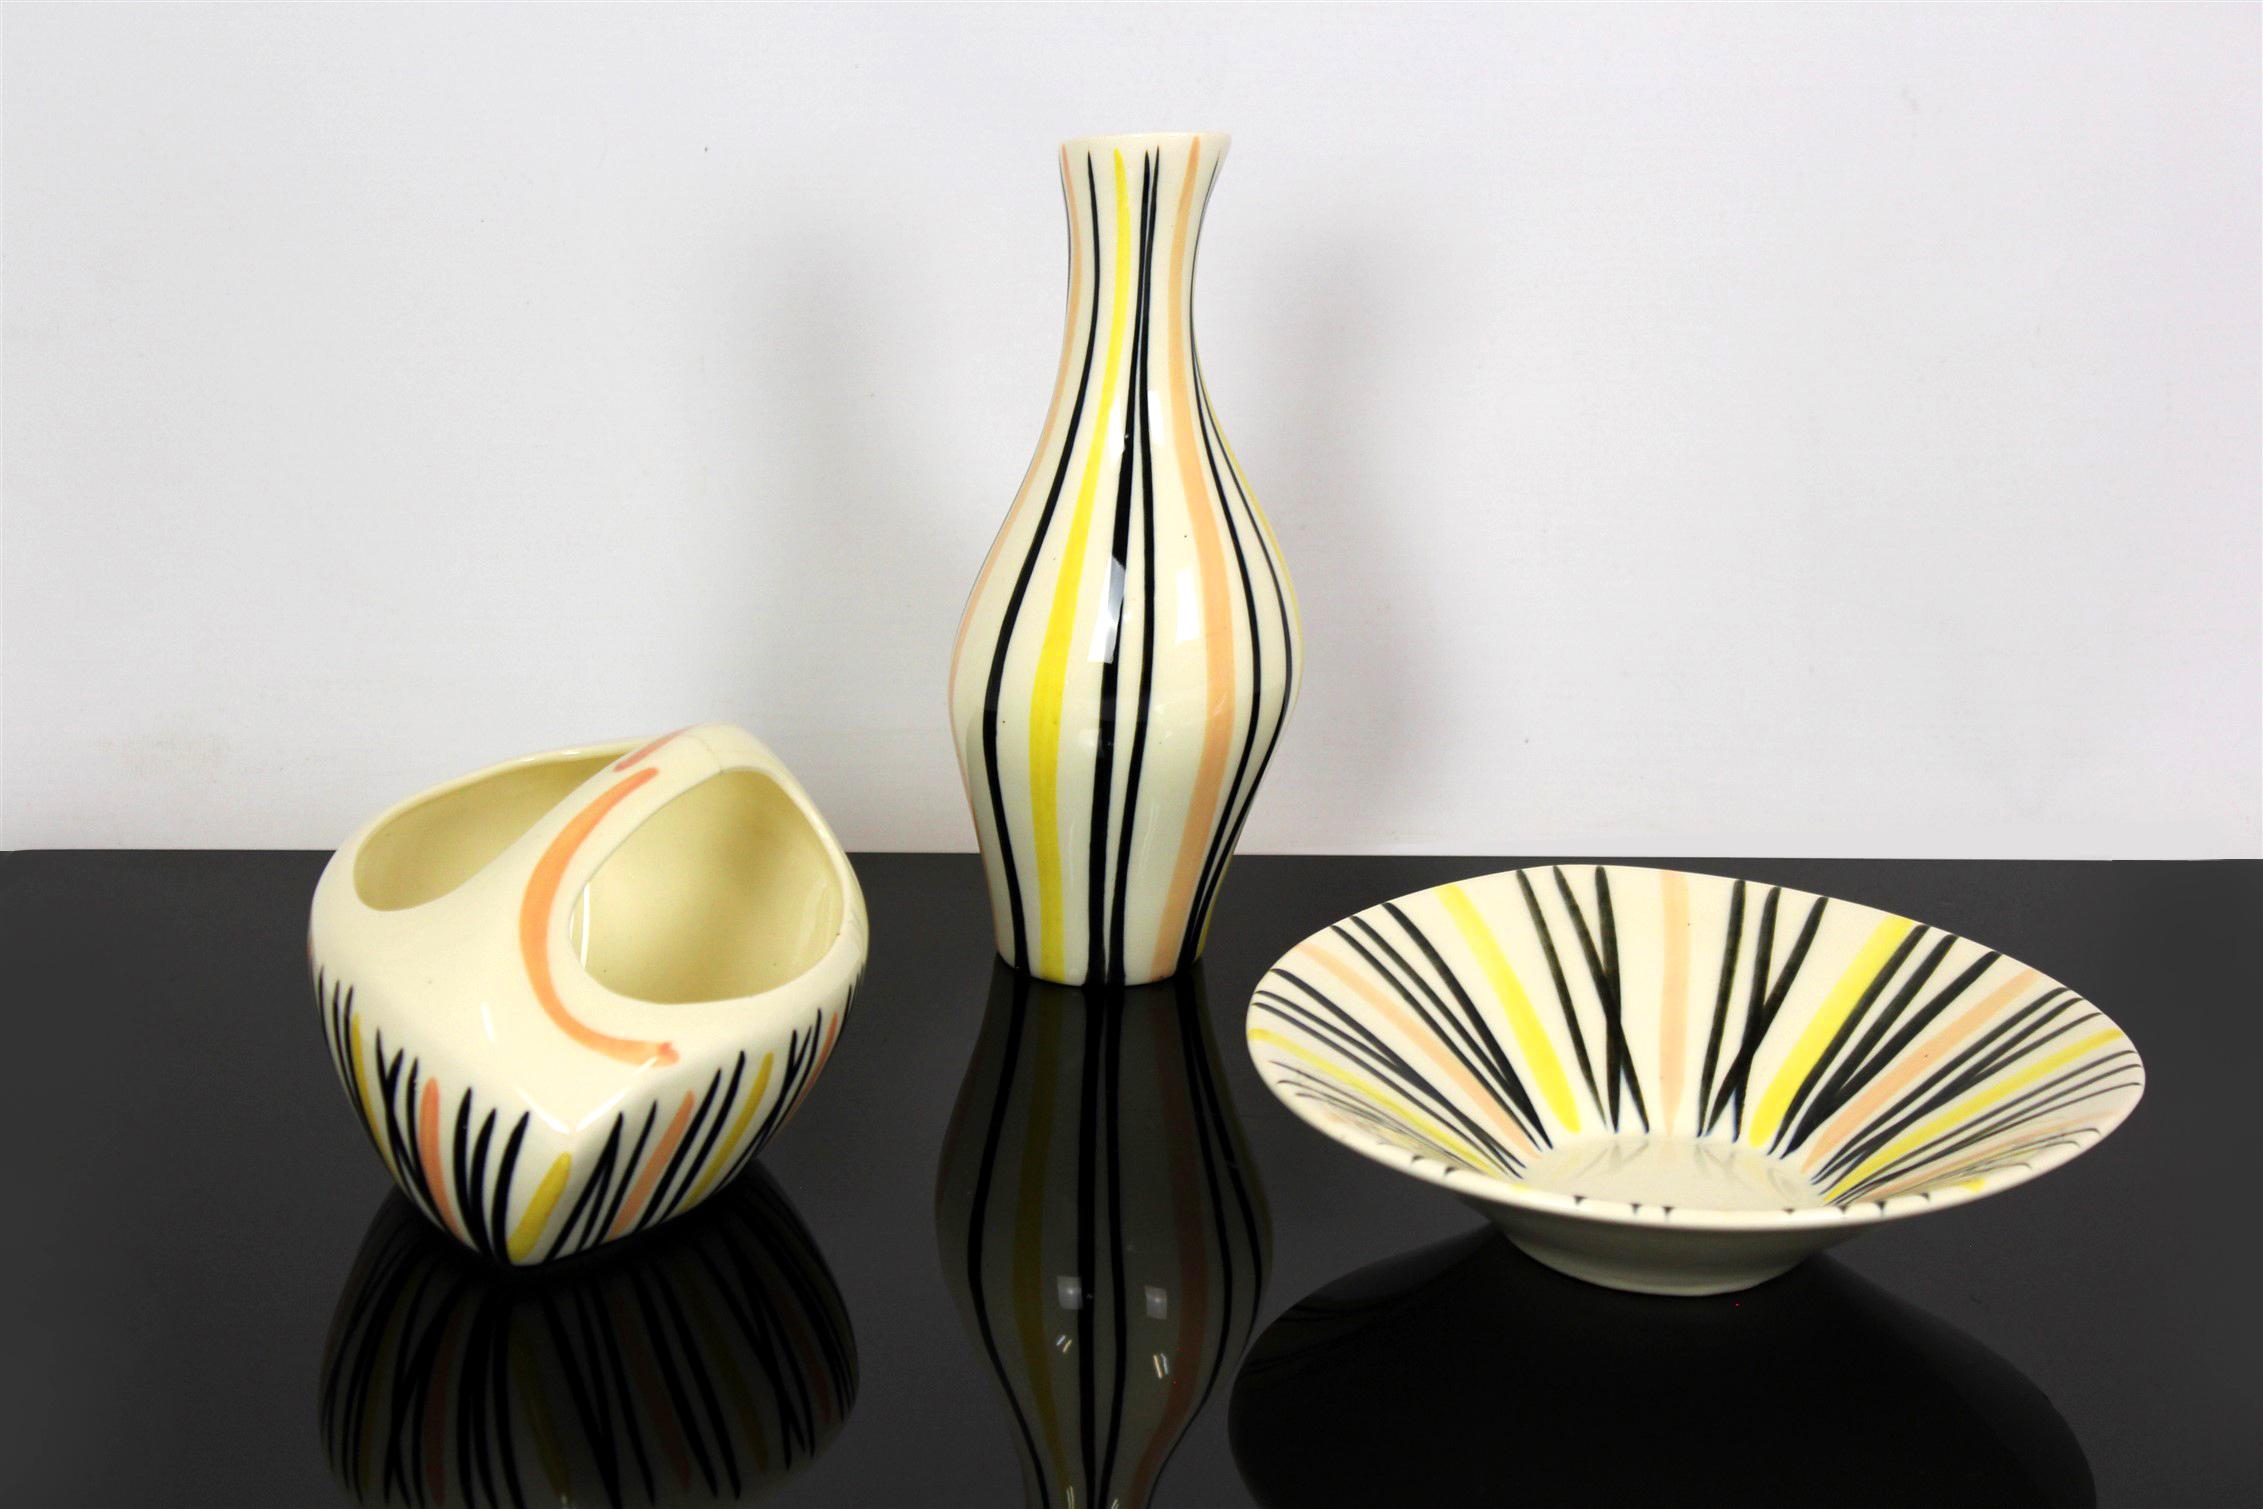 Das Porzellanset wurde 1959 von Jarmila Formánková für Ditmar Urbach entworfen. Das Set besteht aus einer Vase (10x10x24cm), einer Schale mit Henkel (20x14x10cm) und einem Teller (21x21x6cm). Die Artikel dieser Kollektion werden wegen ihrer